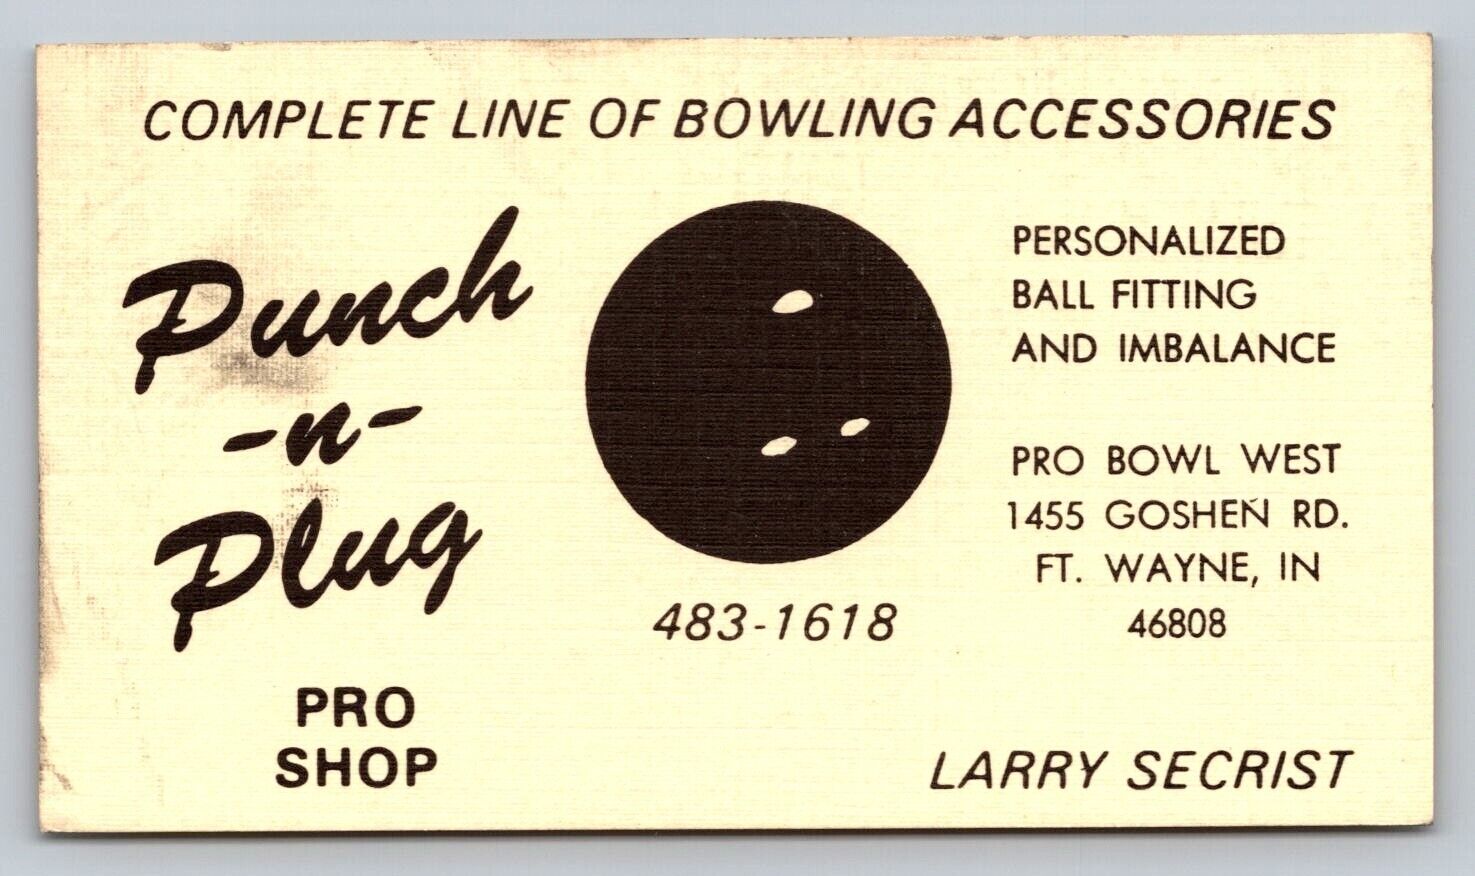 Vintage Business Card Punch n Plug Pro Bowl West Bowling Shop Fort Wayne IN